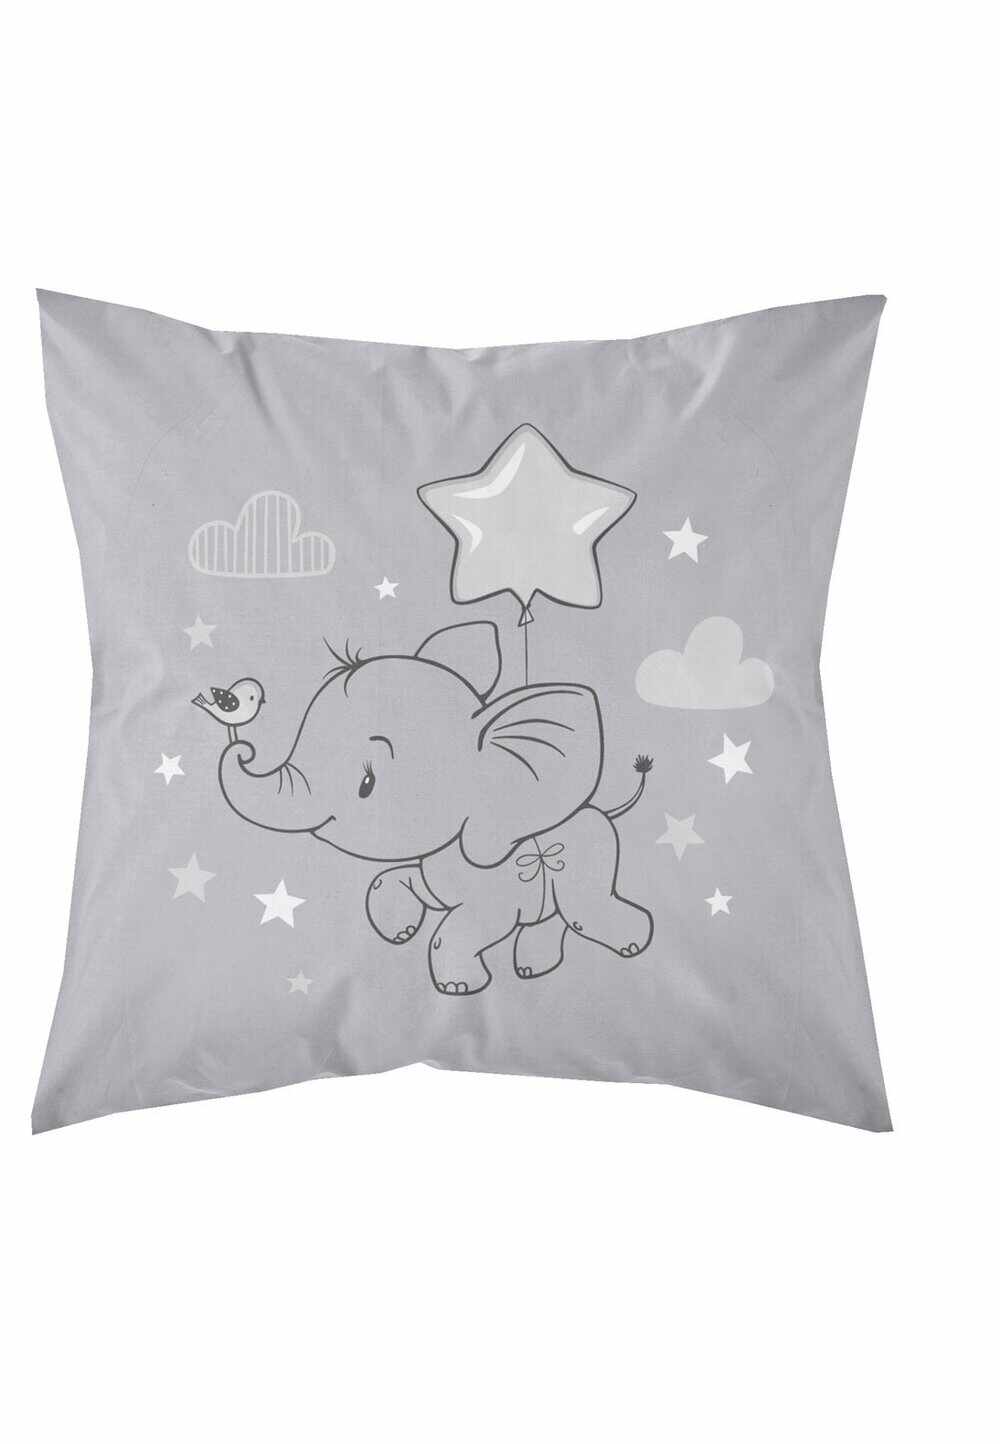 Fata perna bumbac, Little Star, elefant cu stea, gri, 40x40 cm